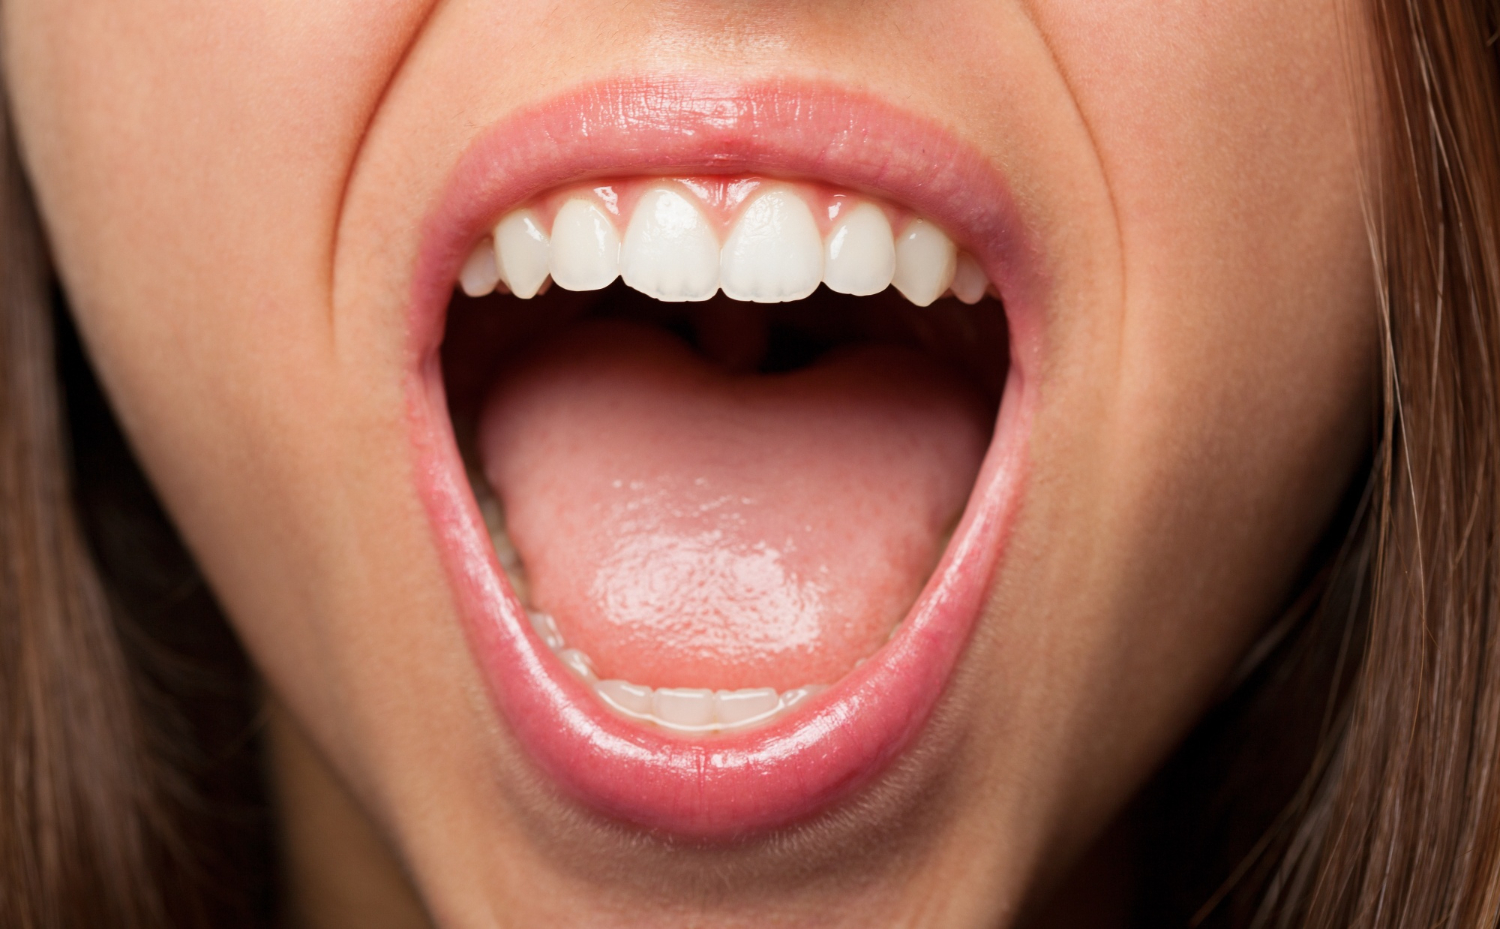 Segundo o especialista em implantodontia Dr. Bruno Segnini, trata-se de um problema que afeta os lábios e estruturas da boca como gengivas, bochechas, céu da boca e a língua